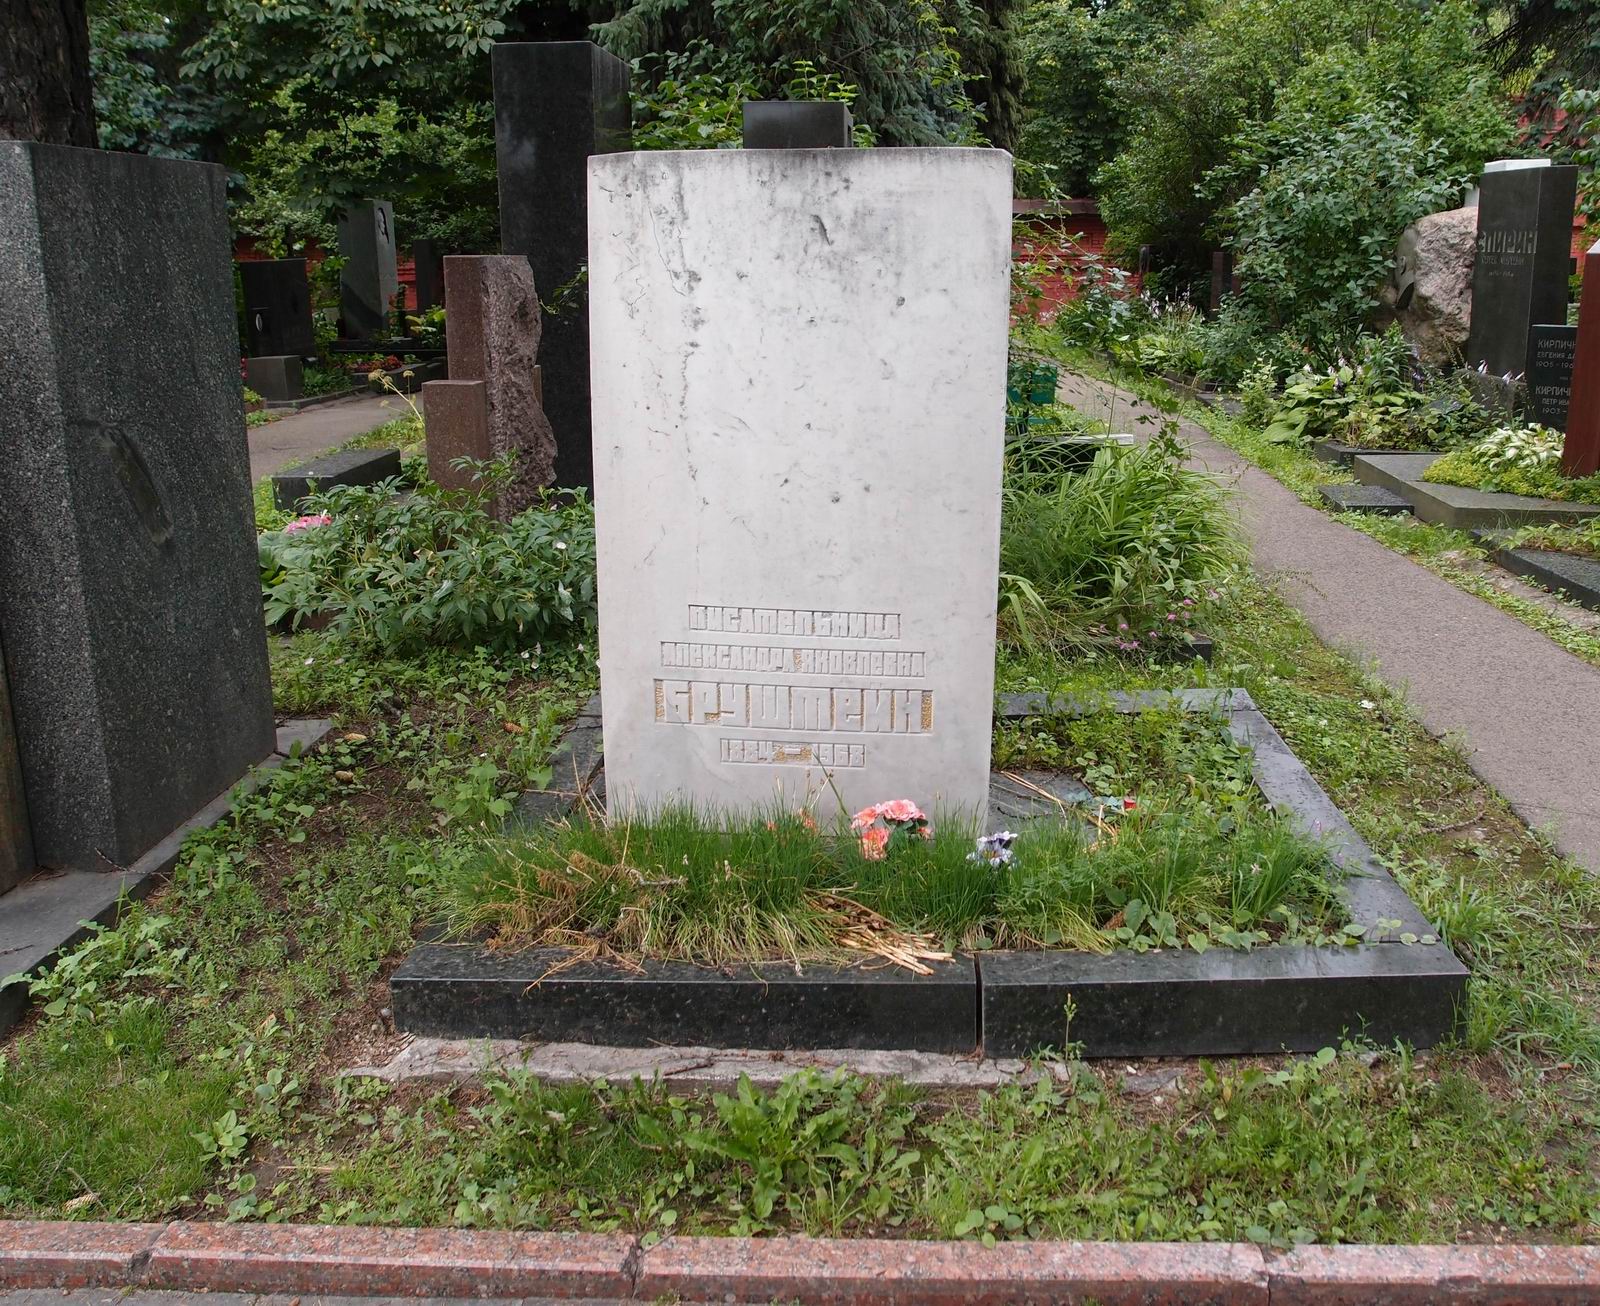 Памятник на могиле Бруштейн А.Я. (1884-1968), ск. О.Воробчук, арх. В.Орлов, на Новодевичьем кладбище (7-5-11). Нажмите левую кнопку мыши чтобы увидеть фрагмент памятника.